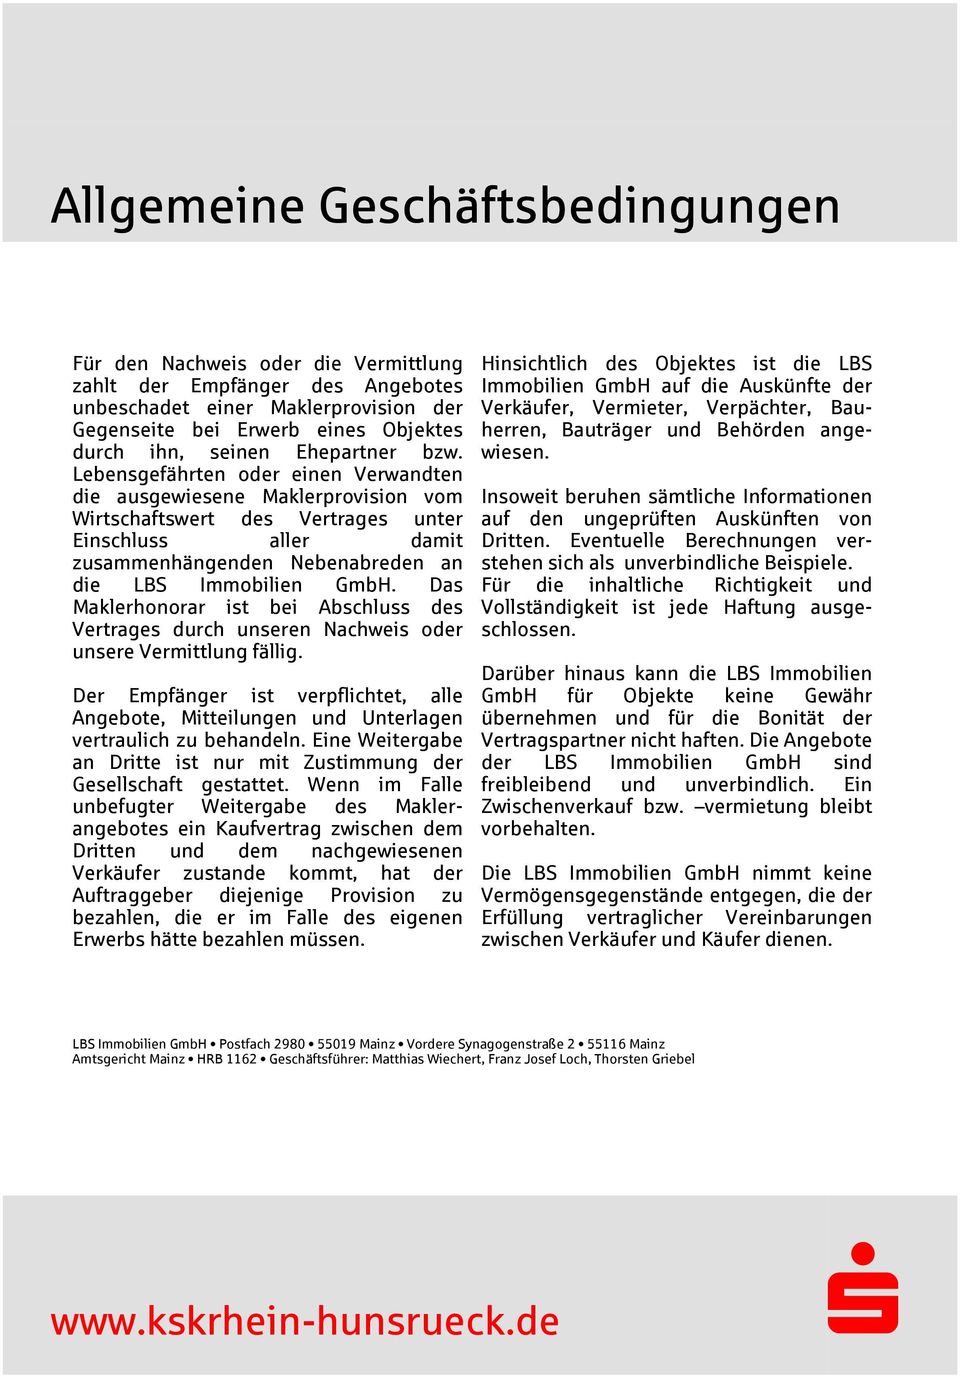 Lebensgefährten oder einen Verwandten die ausgewiesene Maklerprovision vom Wirtschaftswert des Vertrages unter Einschluss aller damit zusammenhängenden Nebenabreden an die LB Immobilien GmbH.